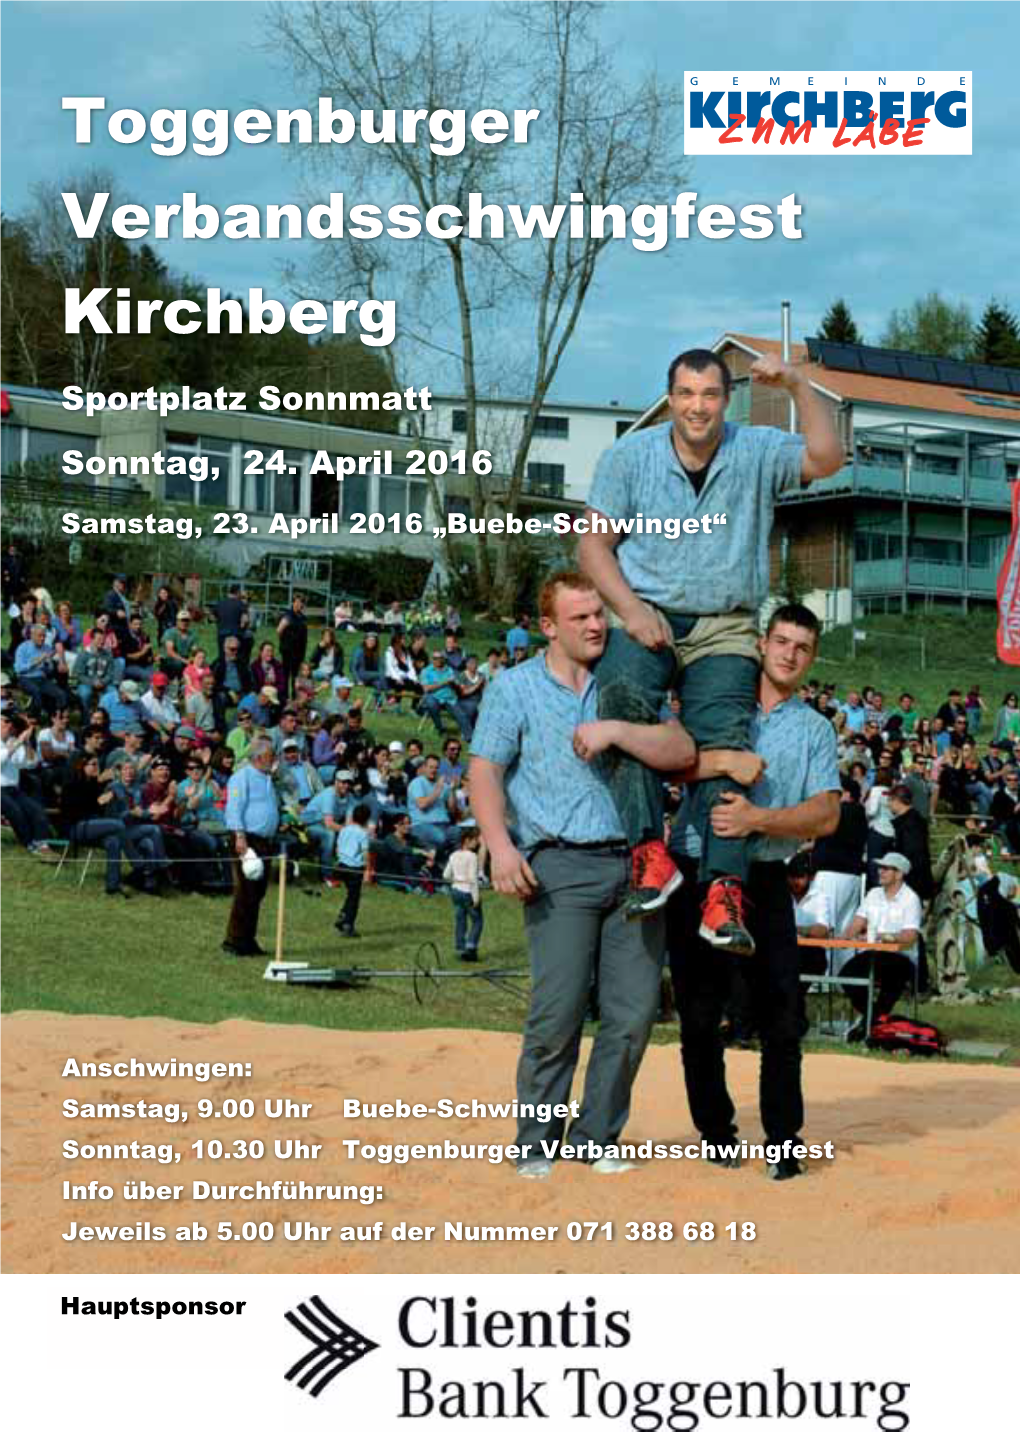 Toggenburger Verbandsschwingfest Kirchberg